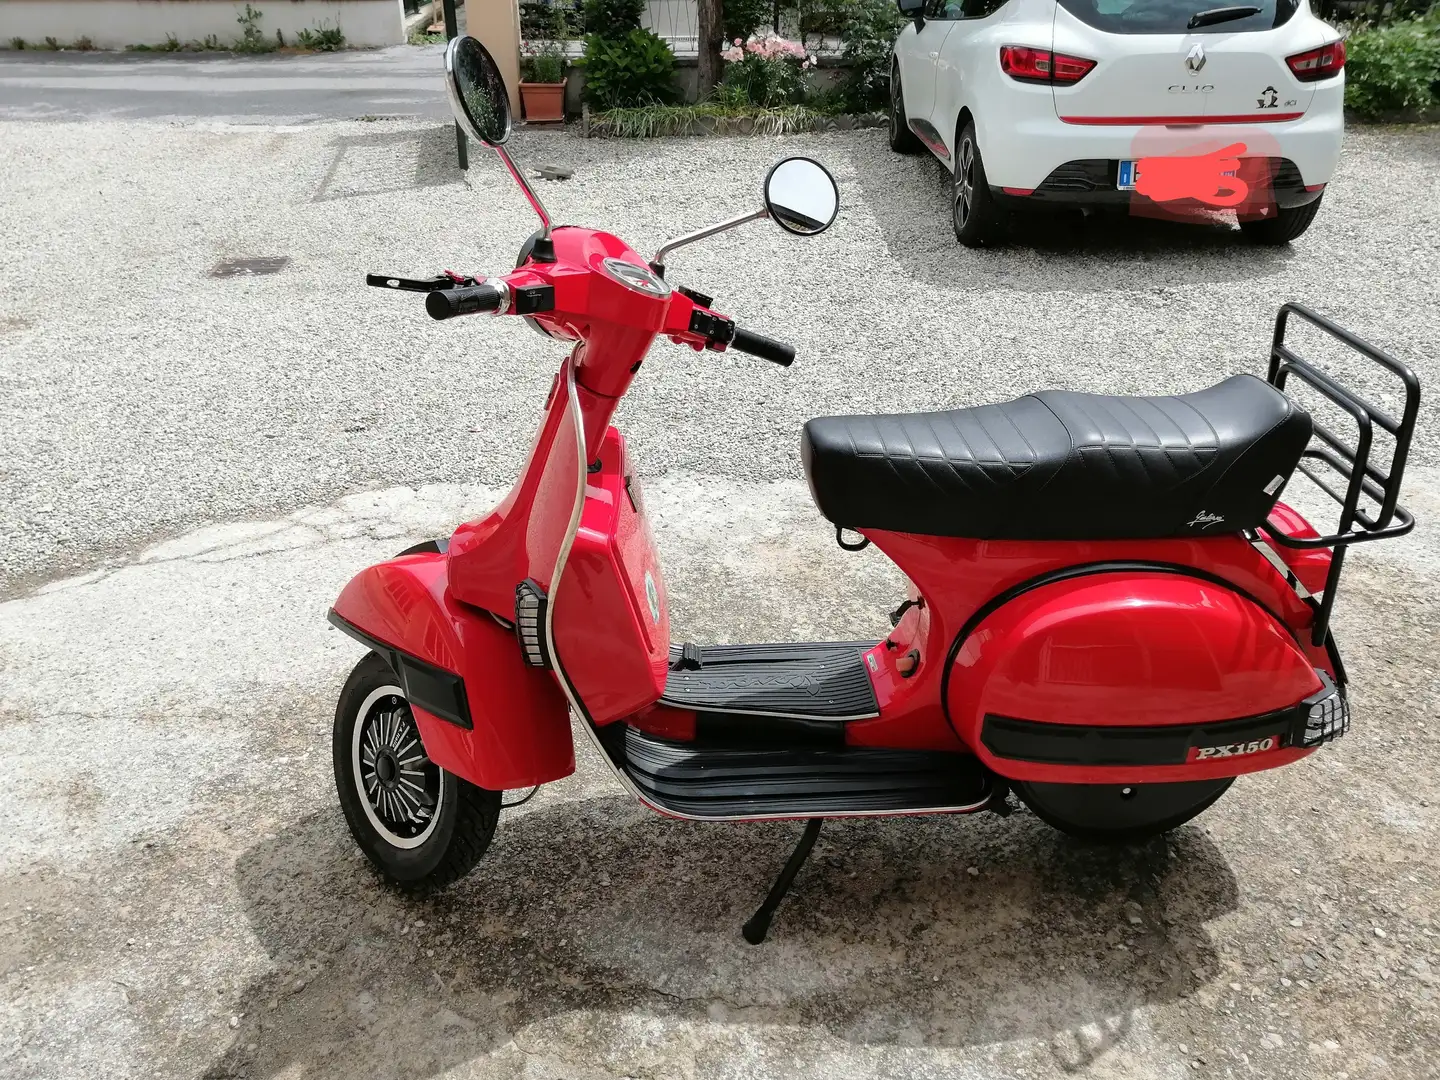 Piaggio PX 150 Red - 2